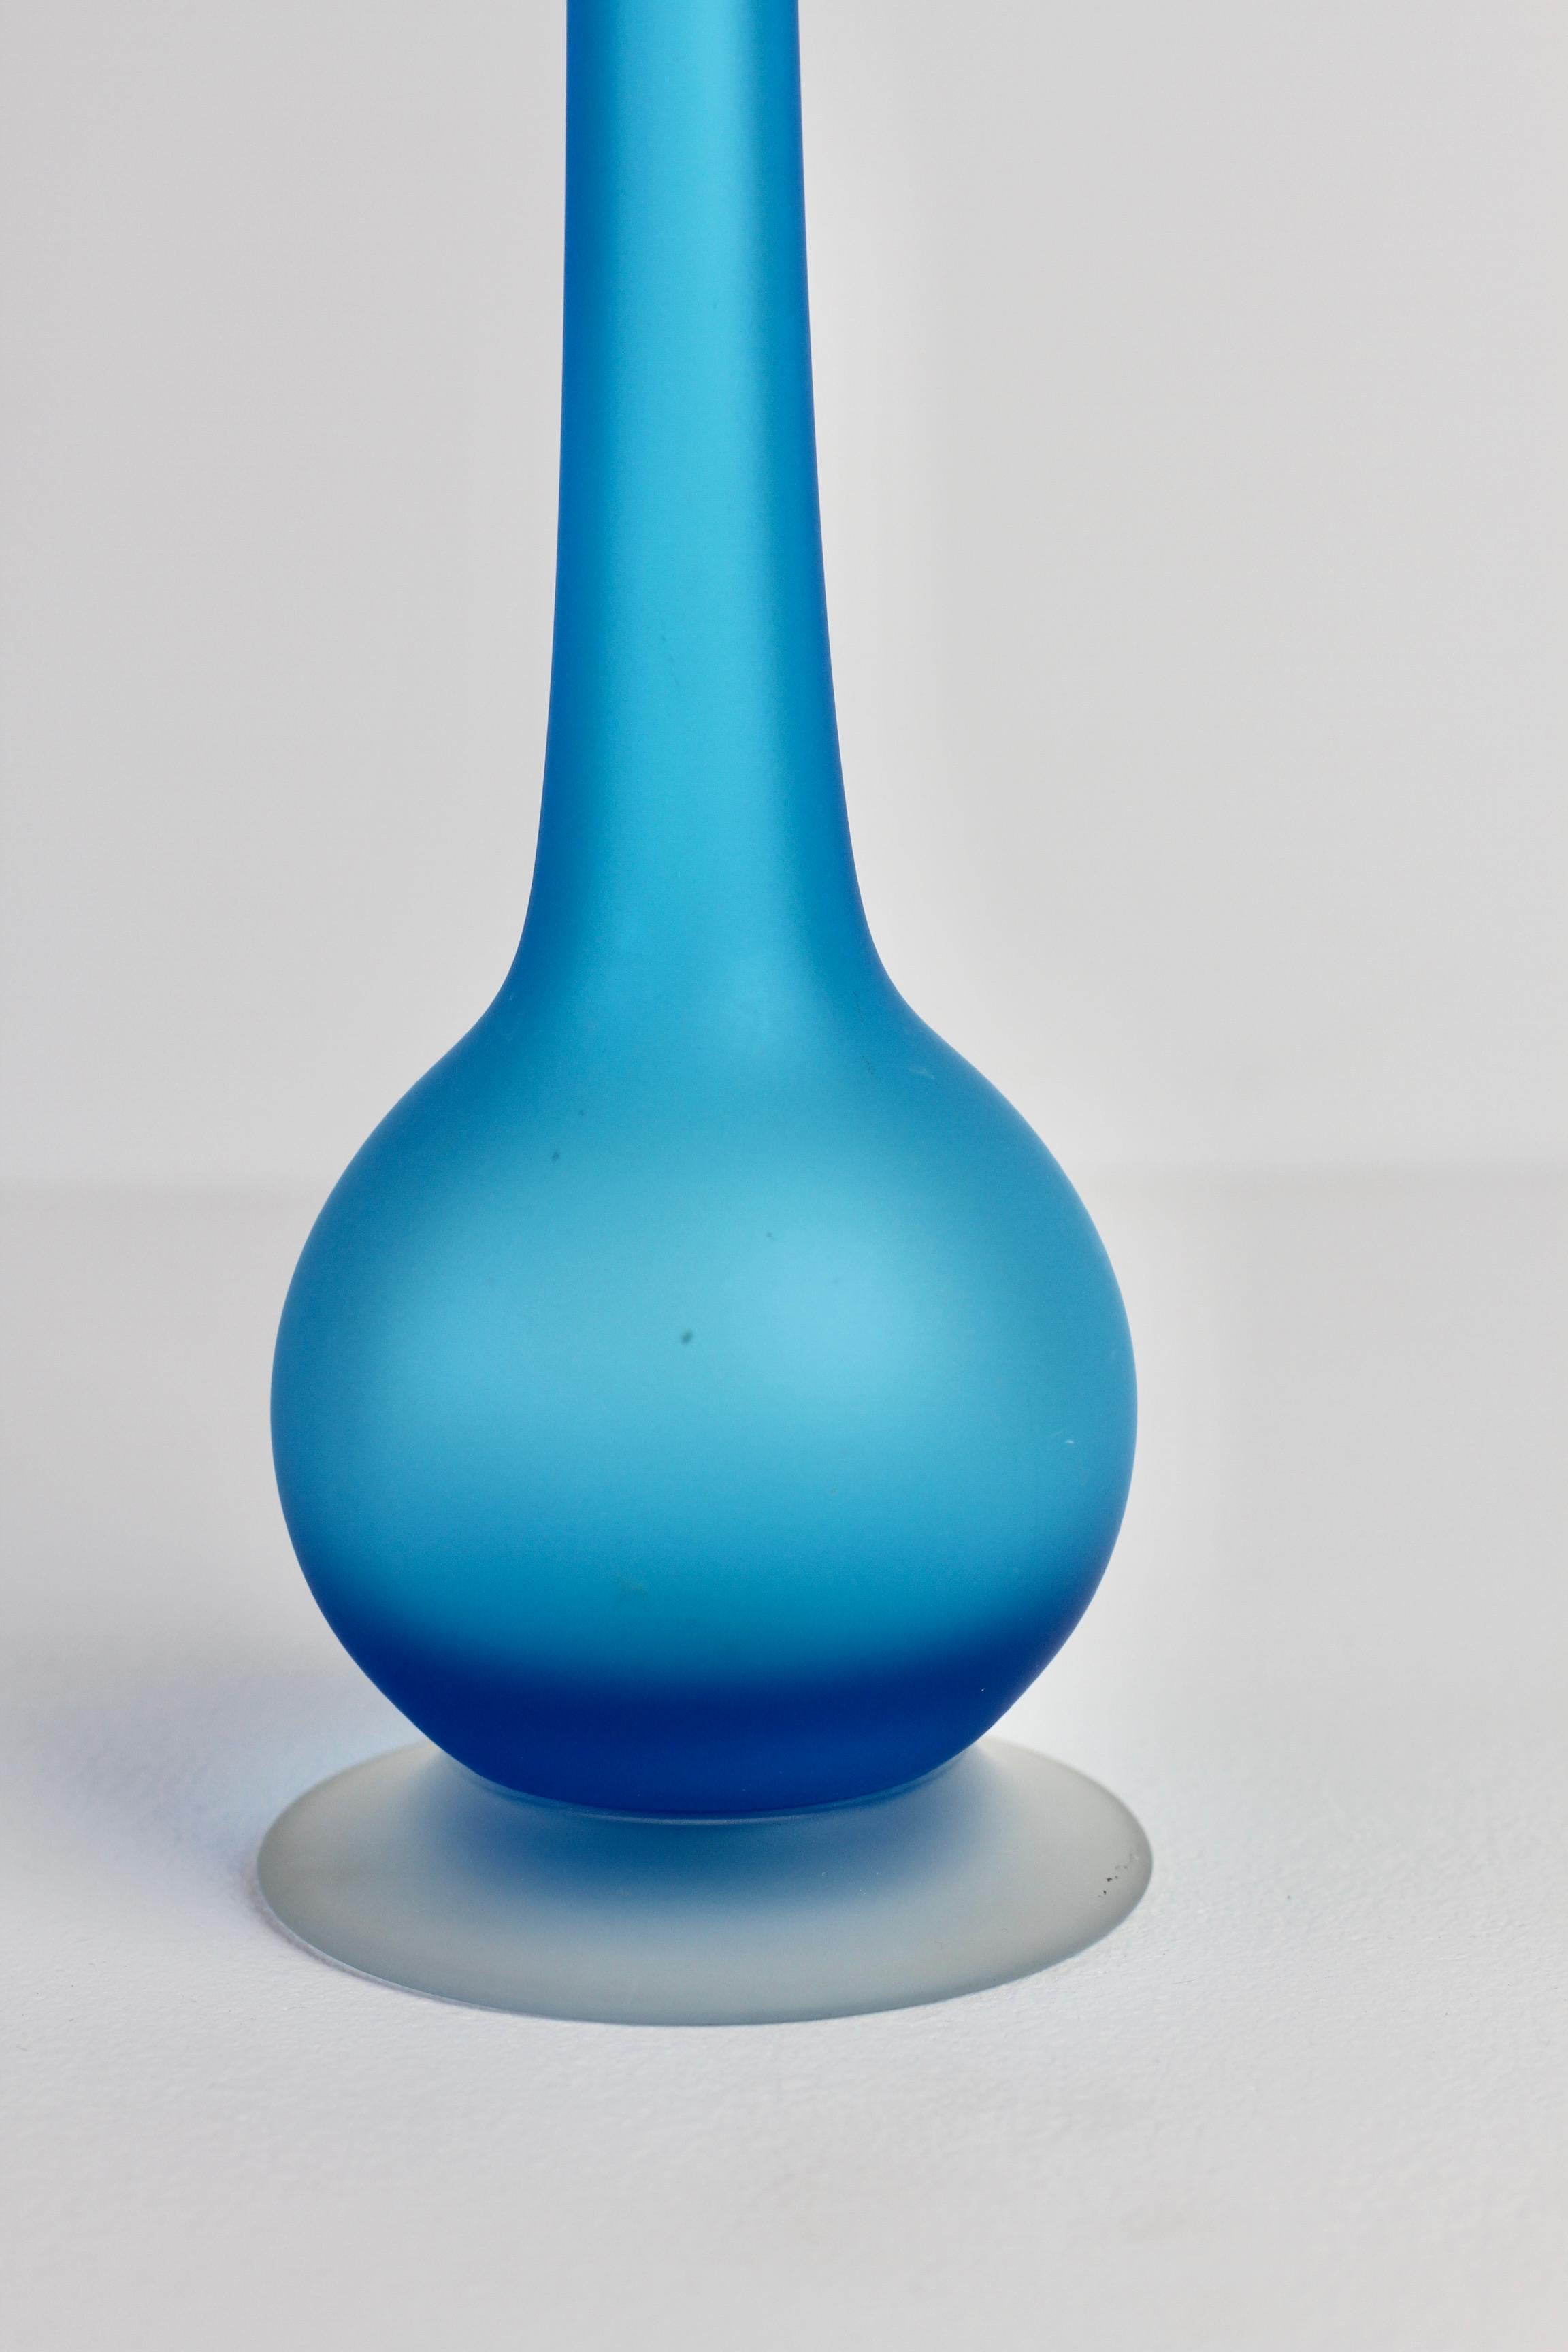 Blown Glass Rare Colorful Blue Carlo Moretti Satinato Murano Glass Pencil Vase For Sale